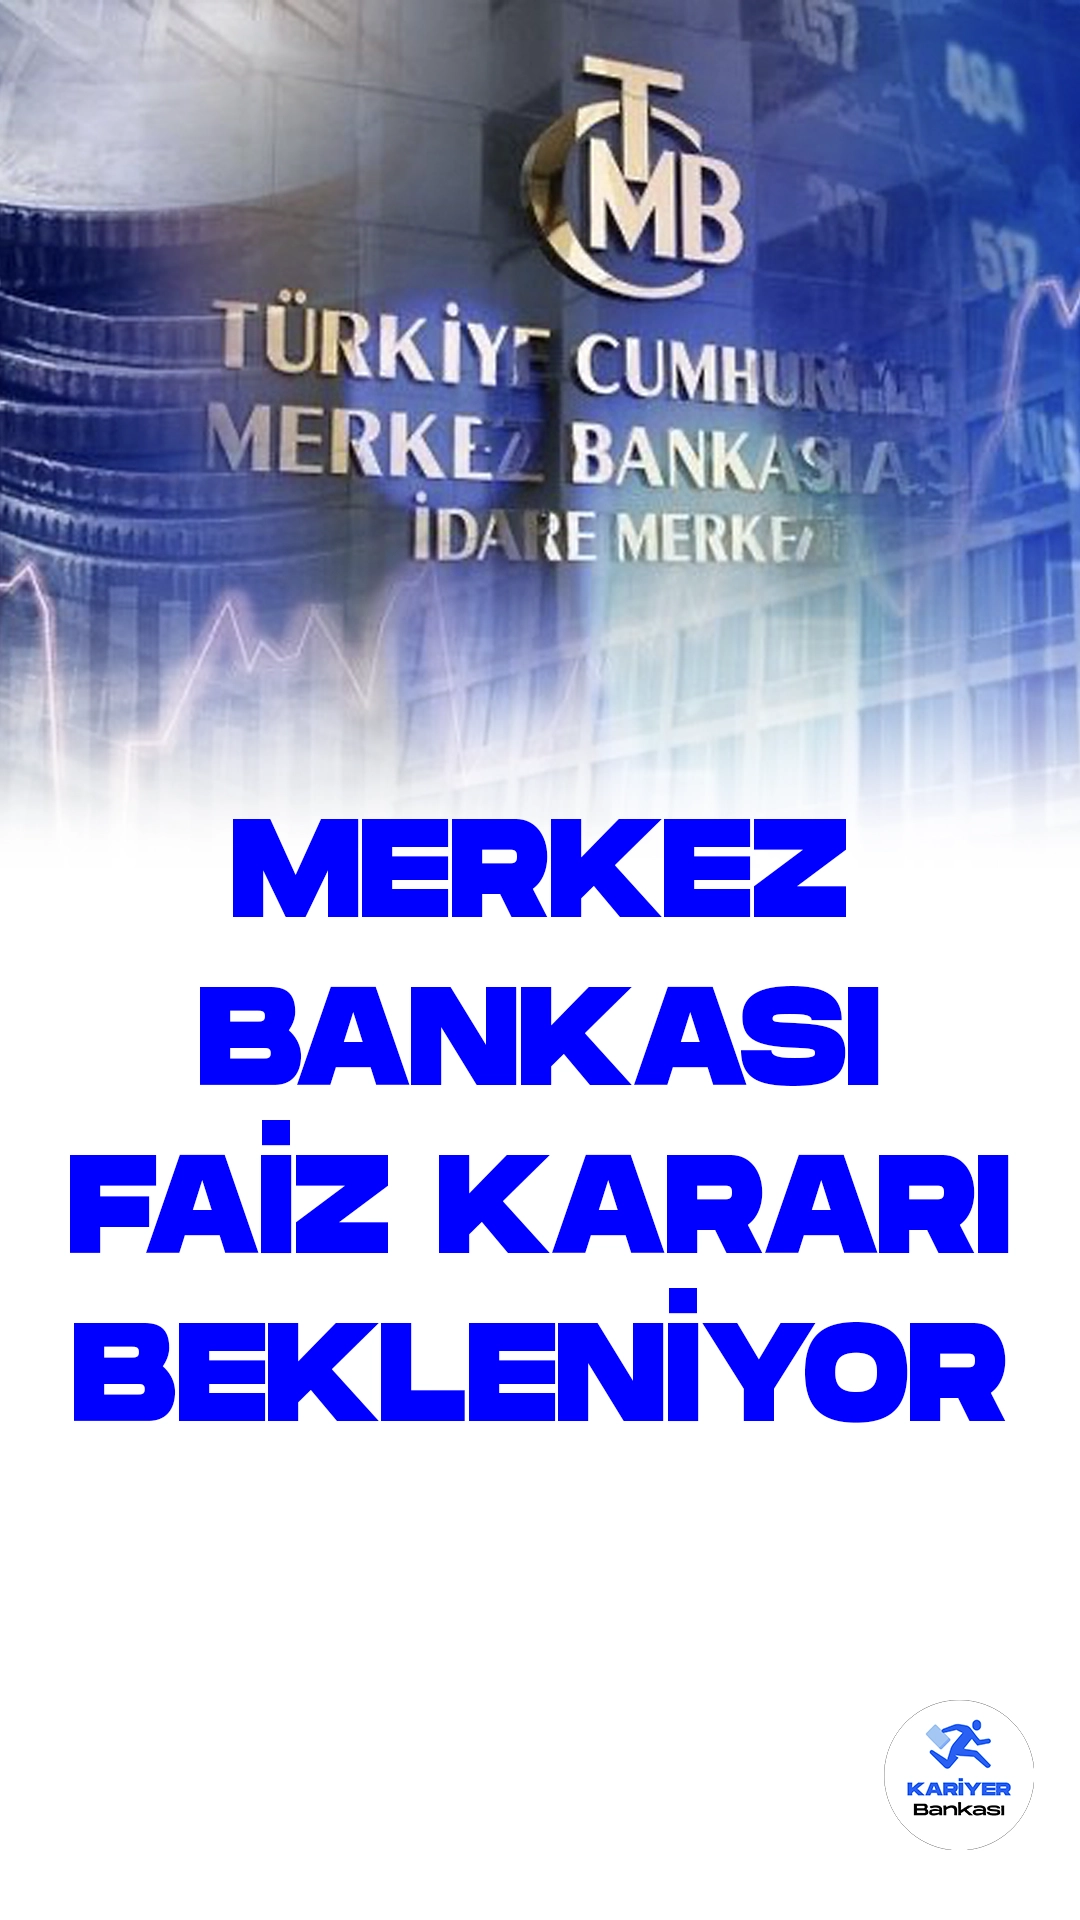 Merkez Bankası 24 Ağustos'ta Faiz Kararını Açıklayacak.Türkiye Cumhuriyet Merkez Bankası (TCMB), Para Politikası Kurulu'nun faiz kararını 24 Ağustos Perşembe günü açıklayacağını duyurdu. Geçtiğimiz toplantıda politika faizini %17,5 seviyesine yükselten Merkez Bankası, bu kez de faiz oranlarını belirleyecek.